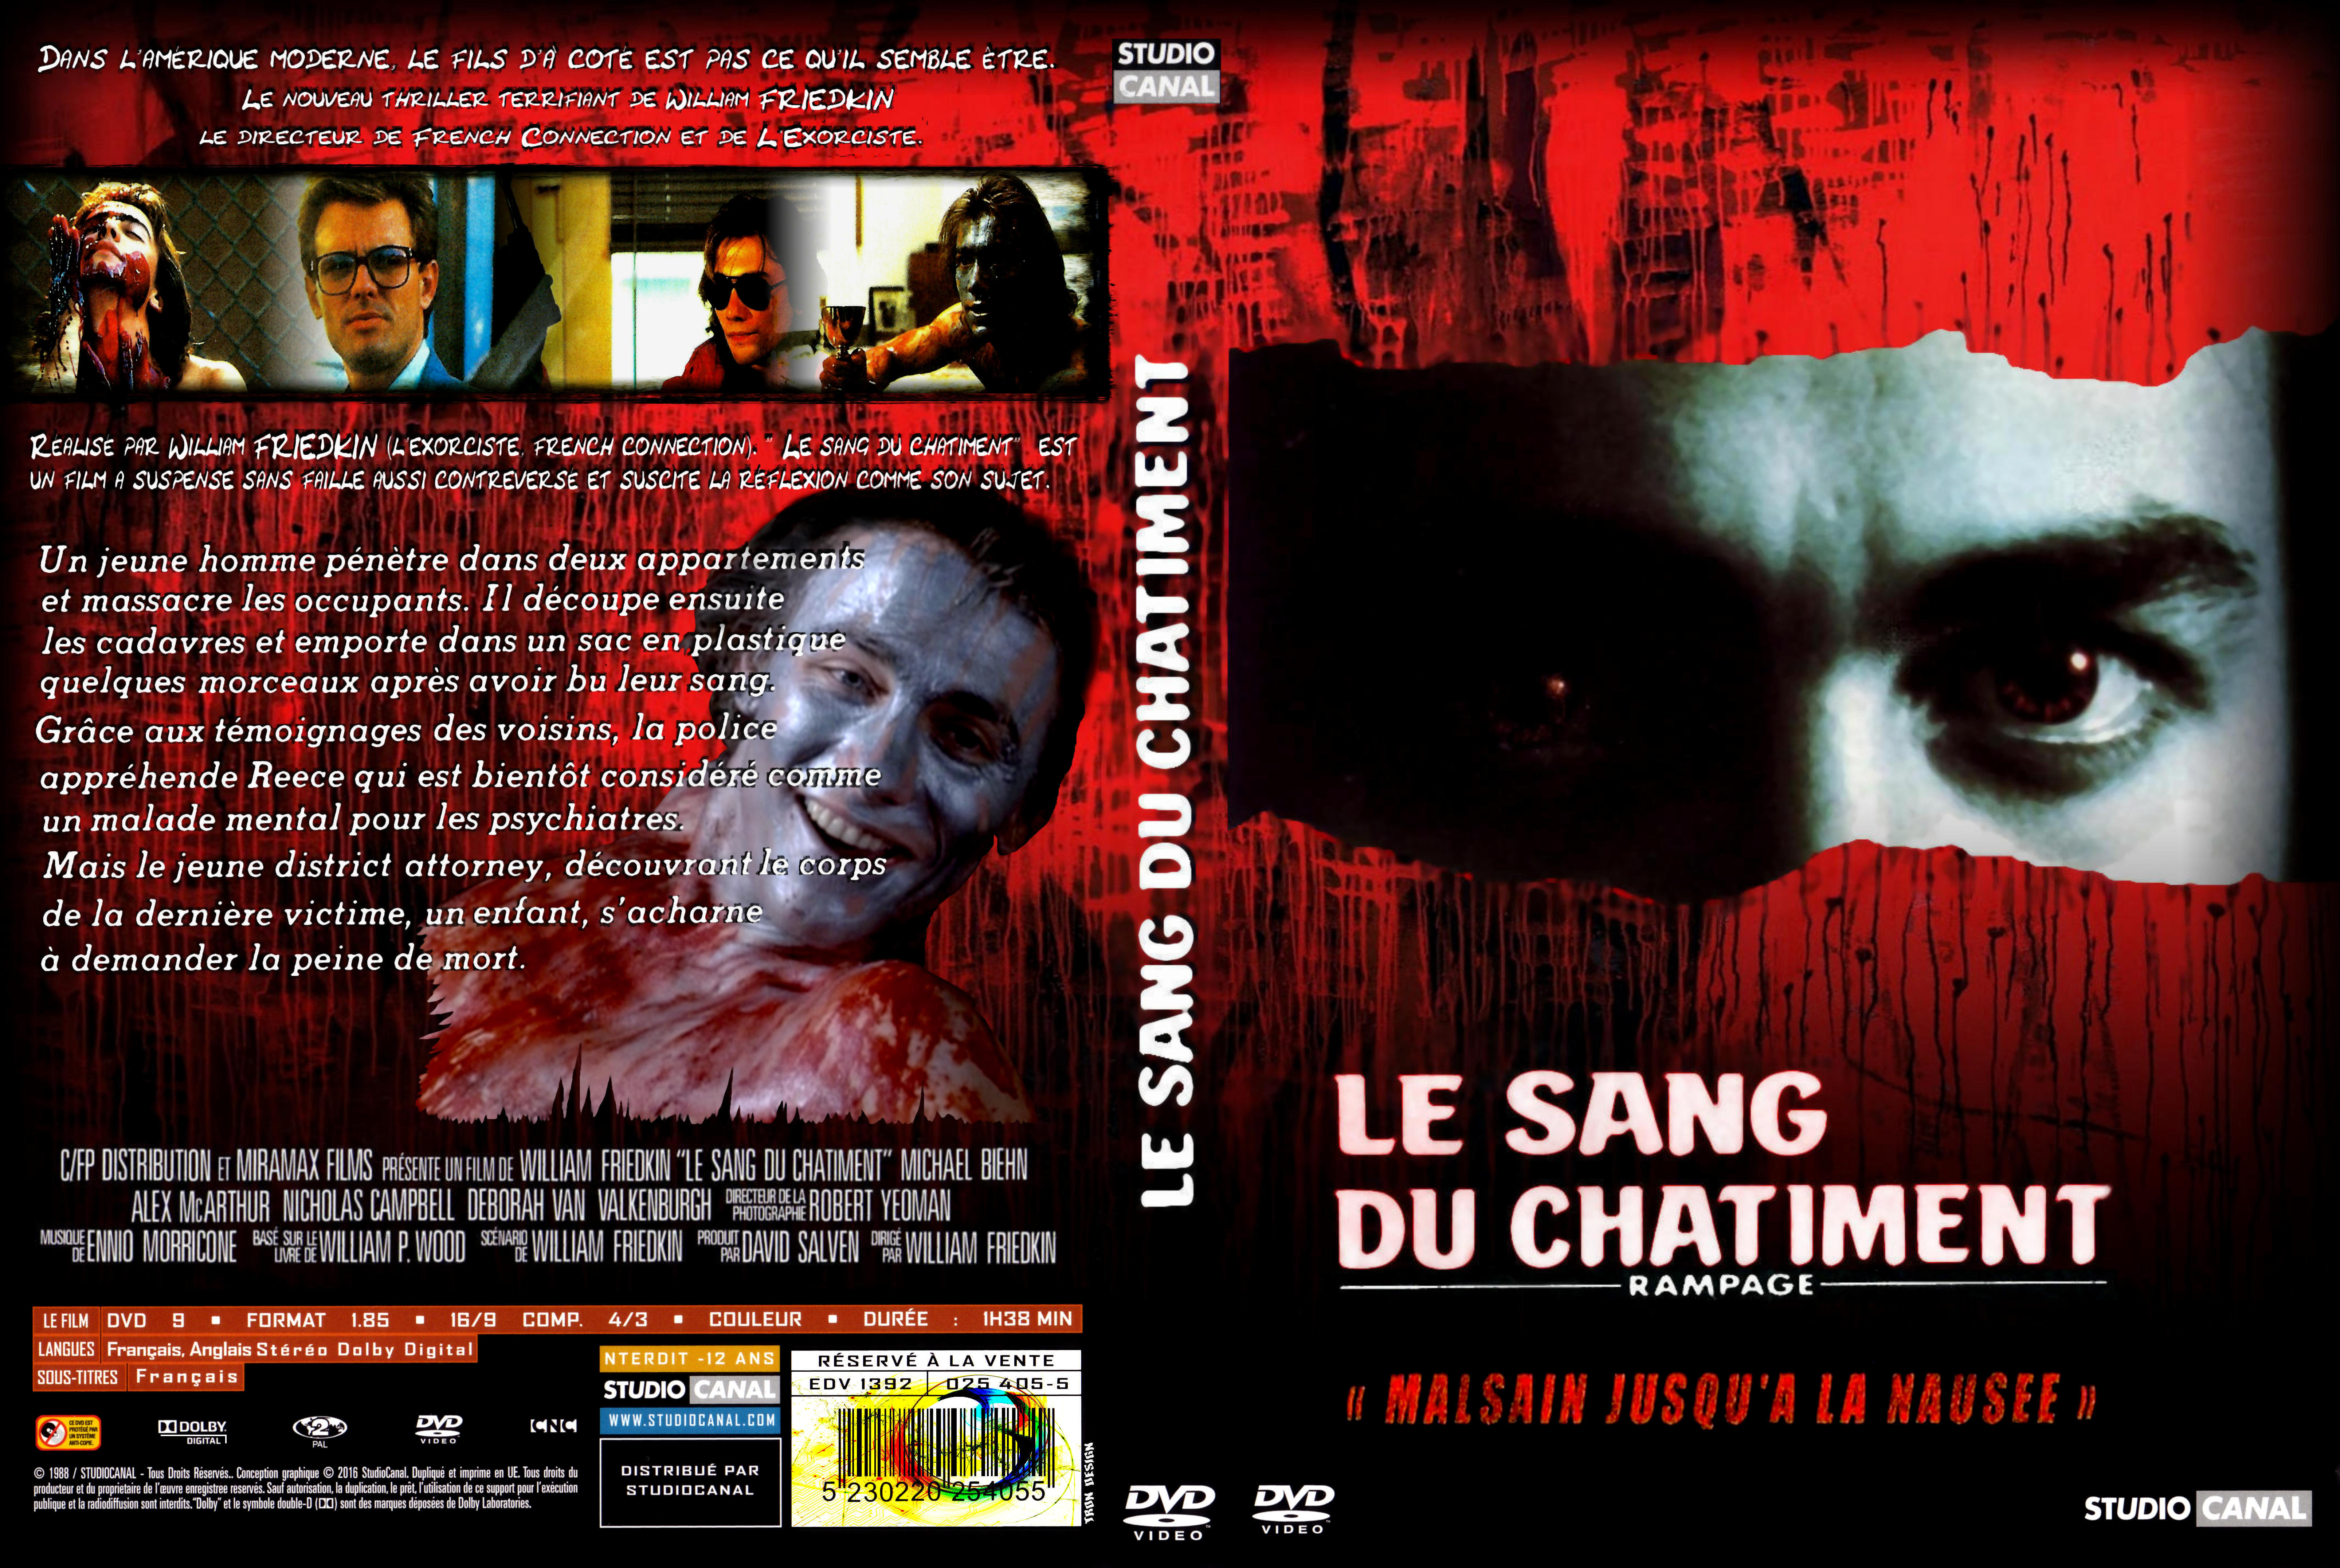 Jaquette DVD Le Sang du chtiment custom